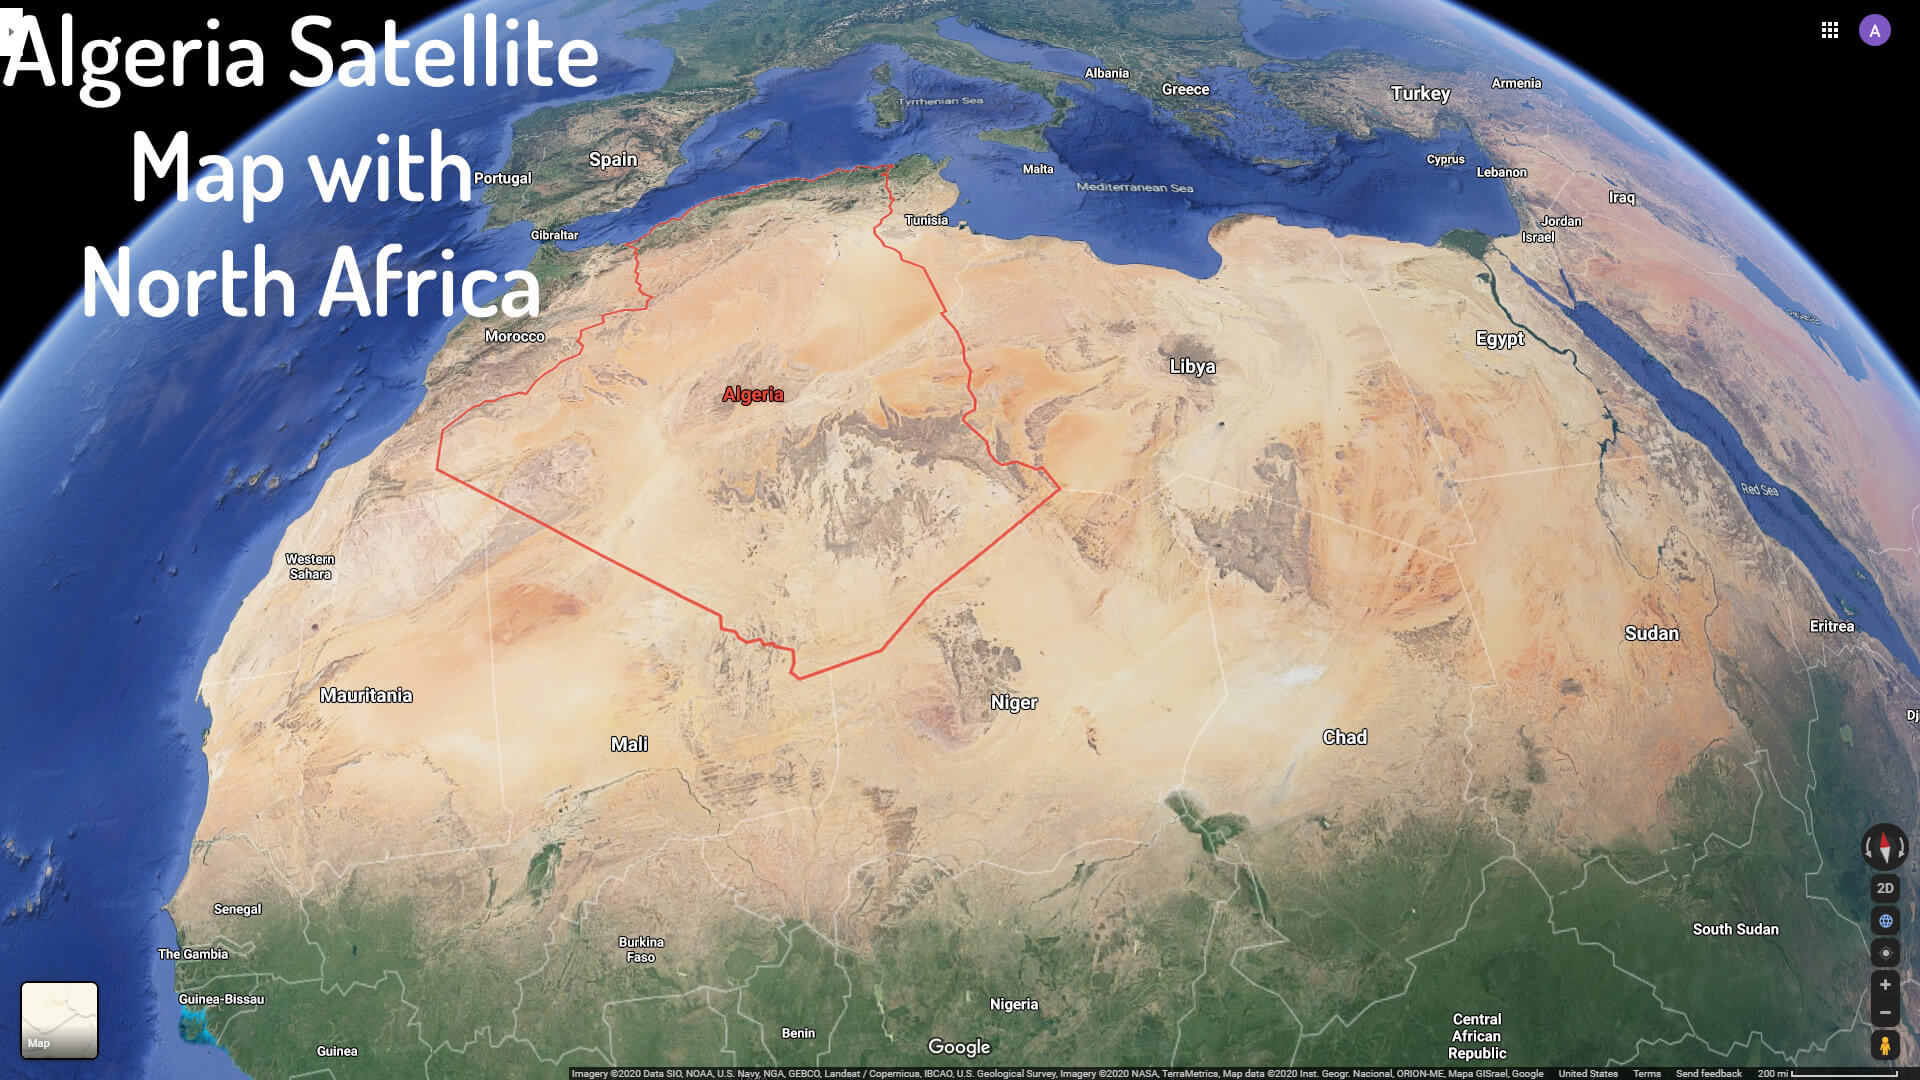 Algeria Satellite Map with North Africa